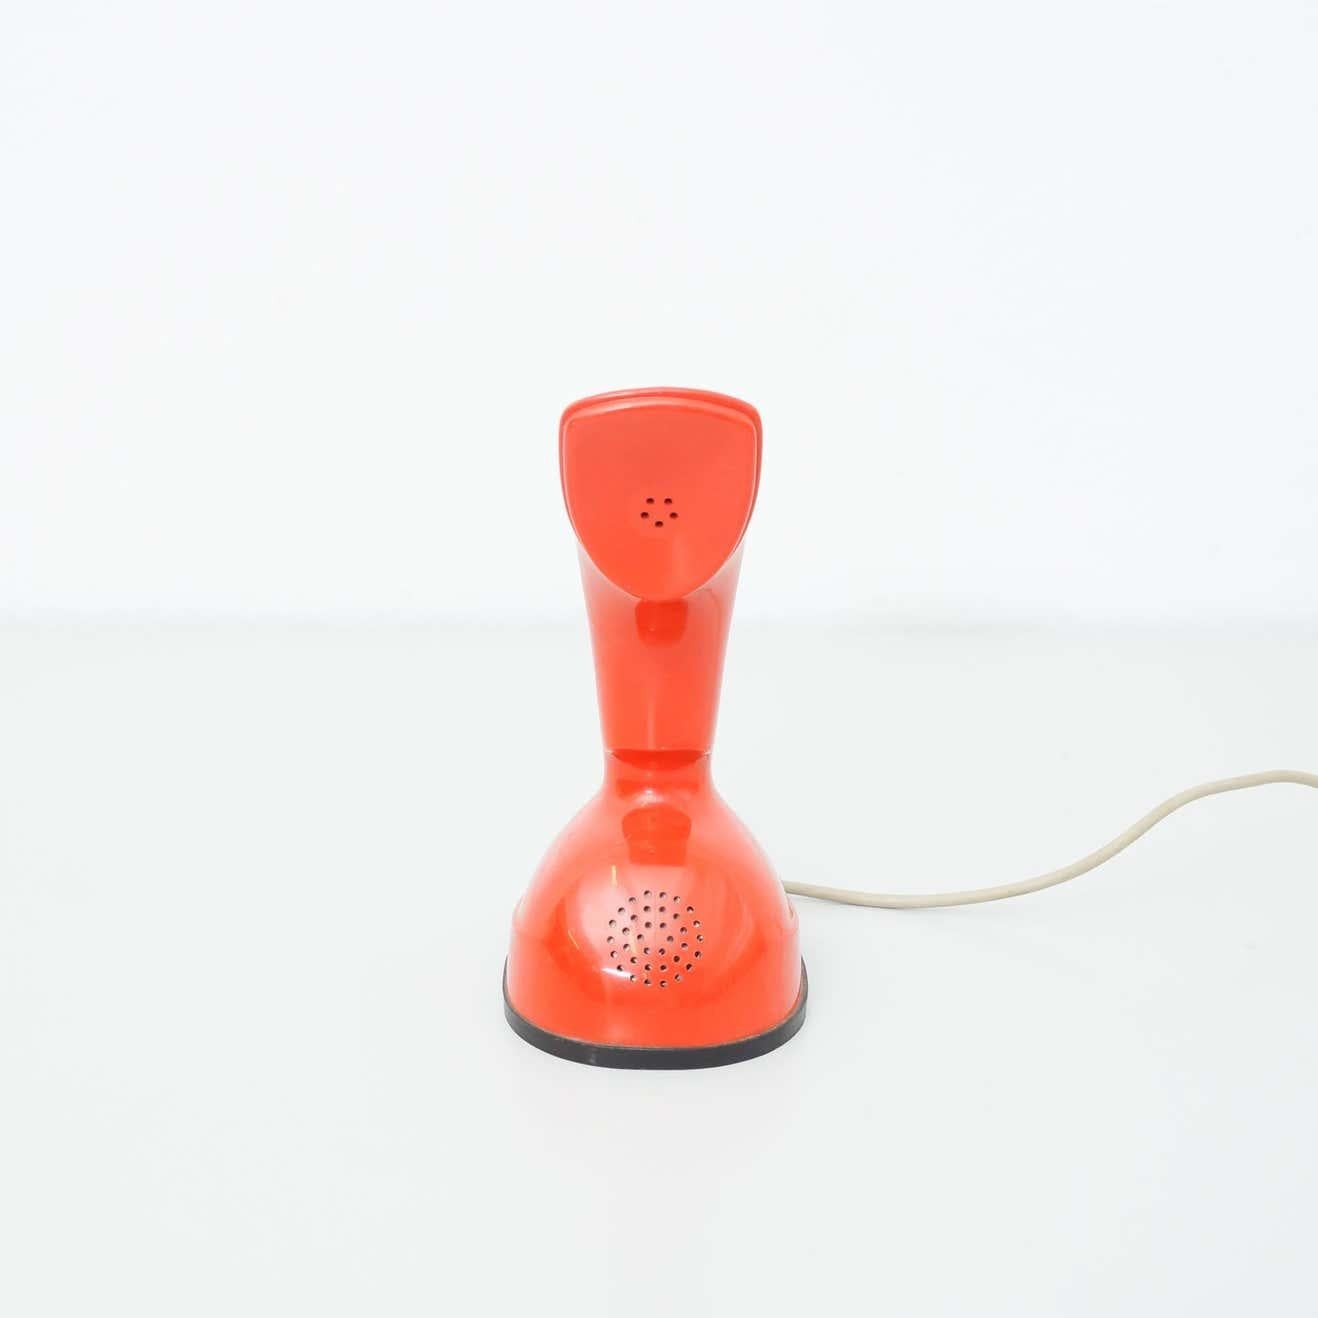 Téléphone Ericsson rouge vintage, vers 1960.
Fabriqué par Ericsson LM, de Suède.

En état d'origine, avec quelques signes visibles d'utilisation antérieure et d'âge, préservant une belle patine.

Matériaux :
Plastique

Dimensions :
D 16 cm